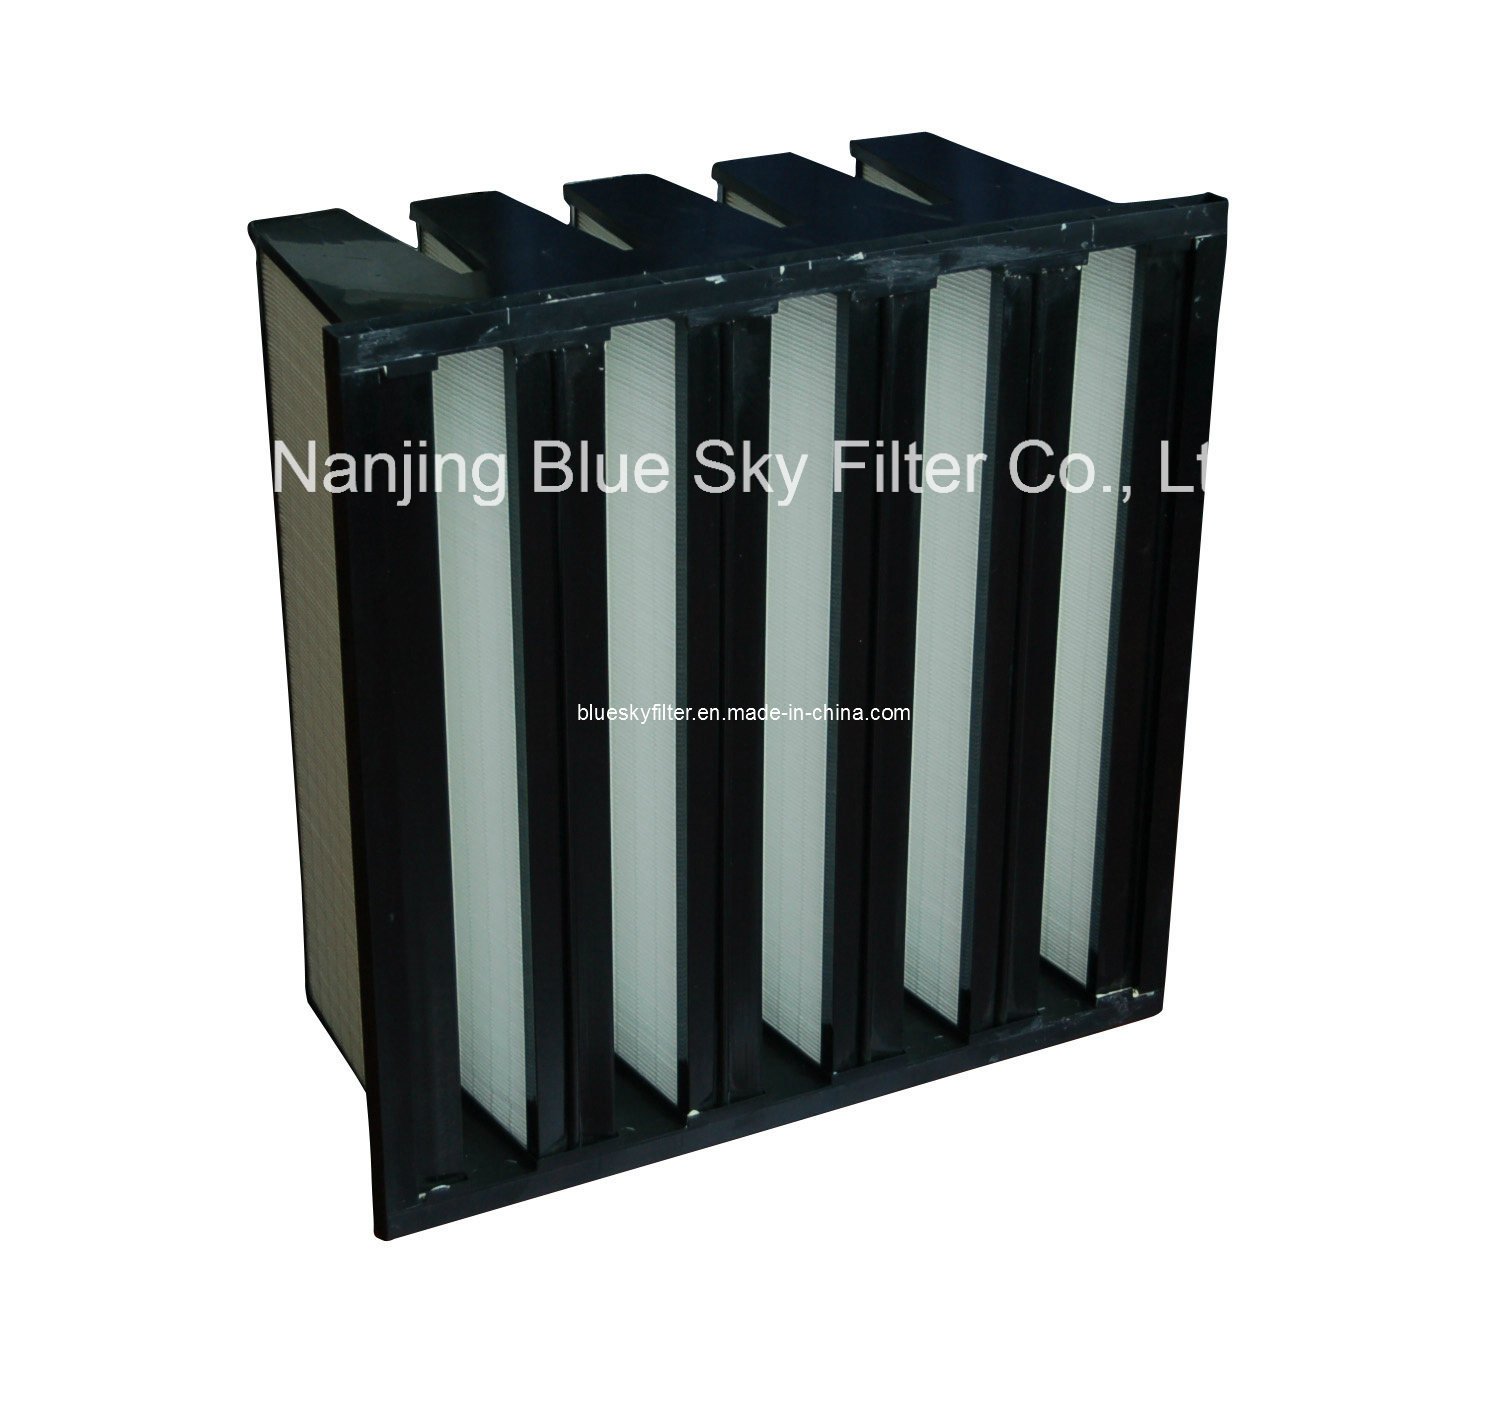 Компактный жесткий фильтр HEPA для систем отопления, вентиляции и кондиционирования воздуха